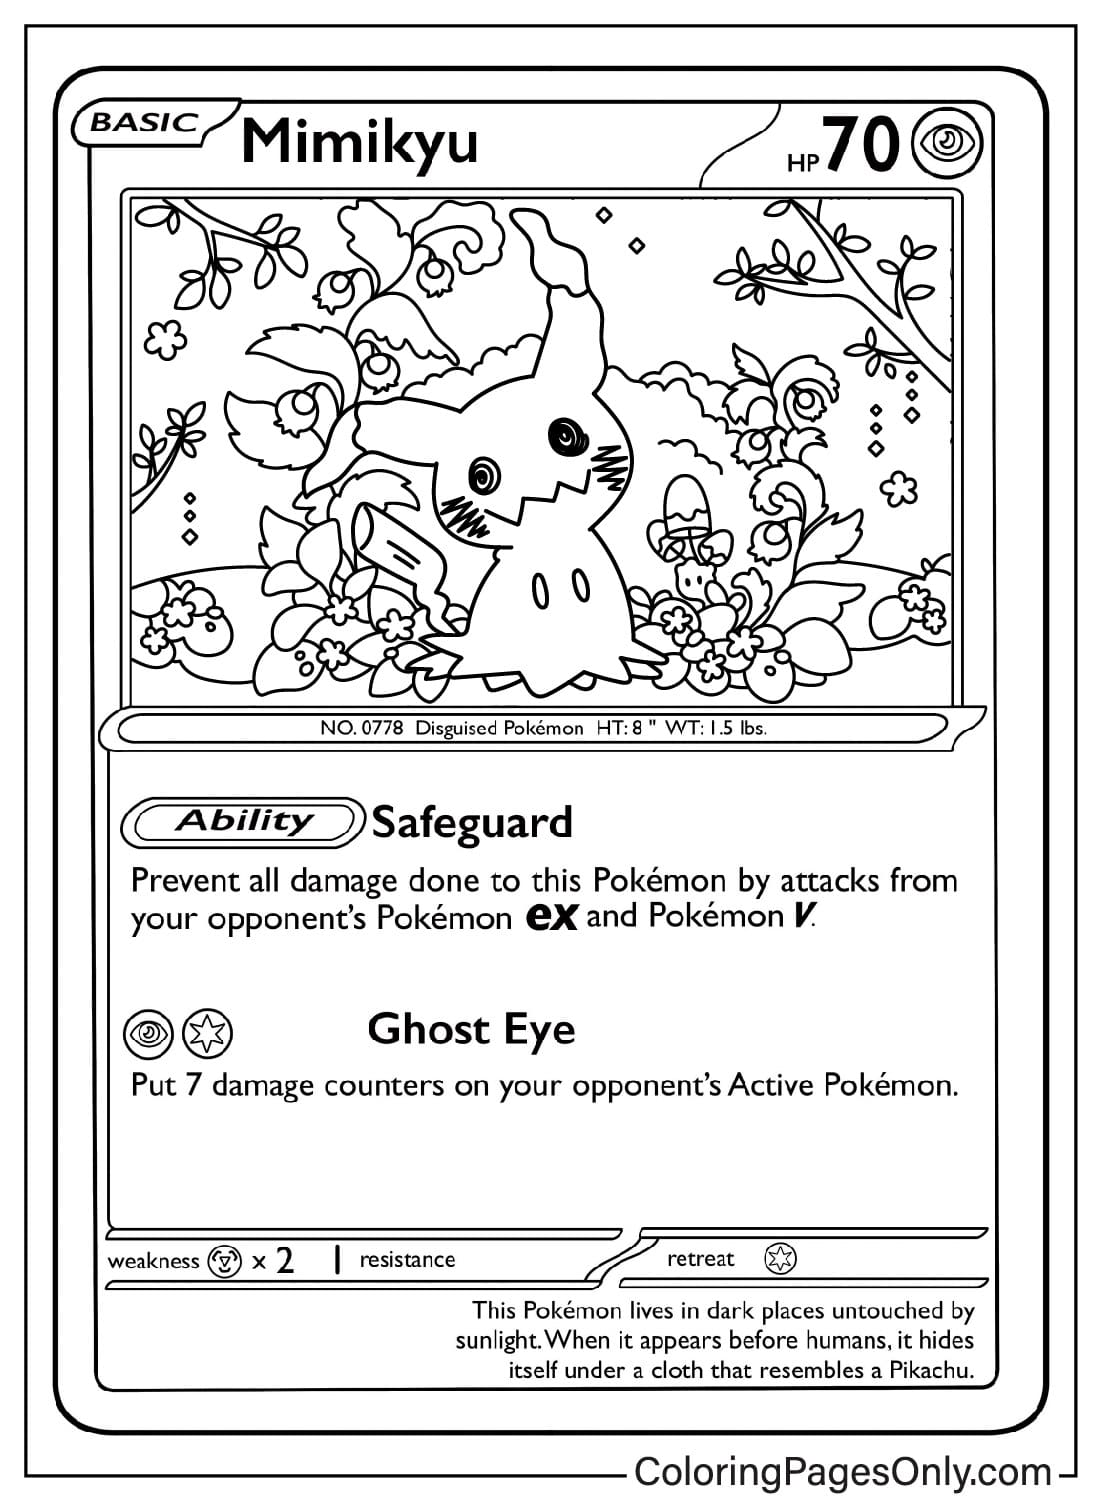 Carta Pokemon Mimikyu da Carta Pokemon